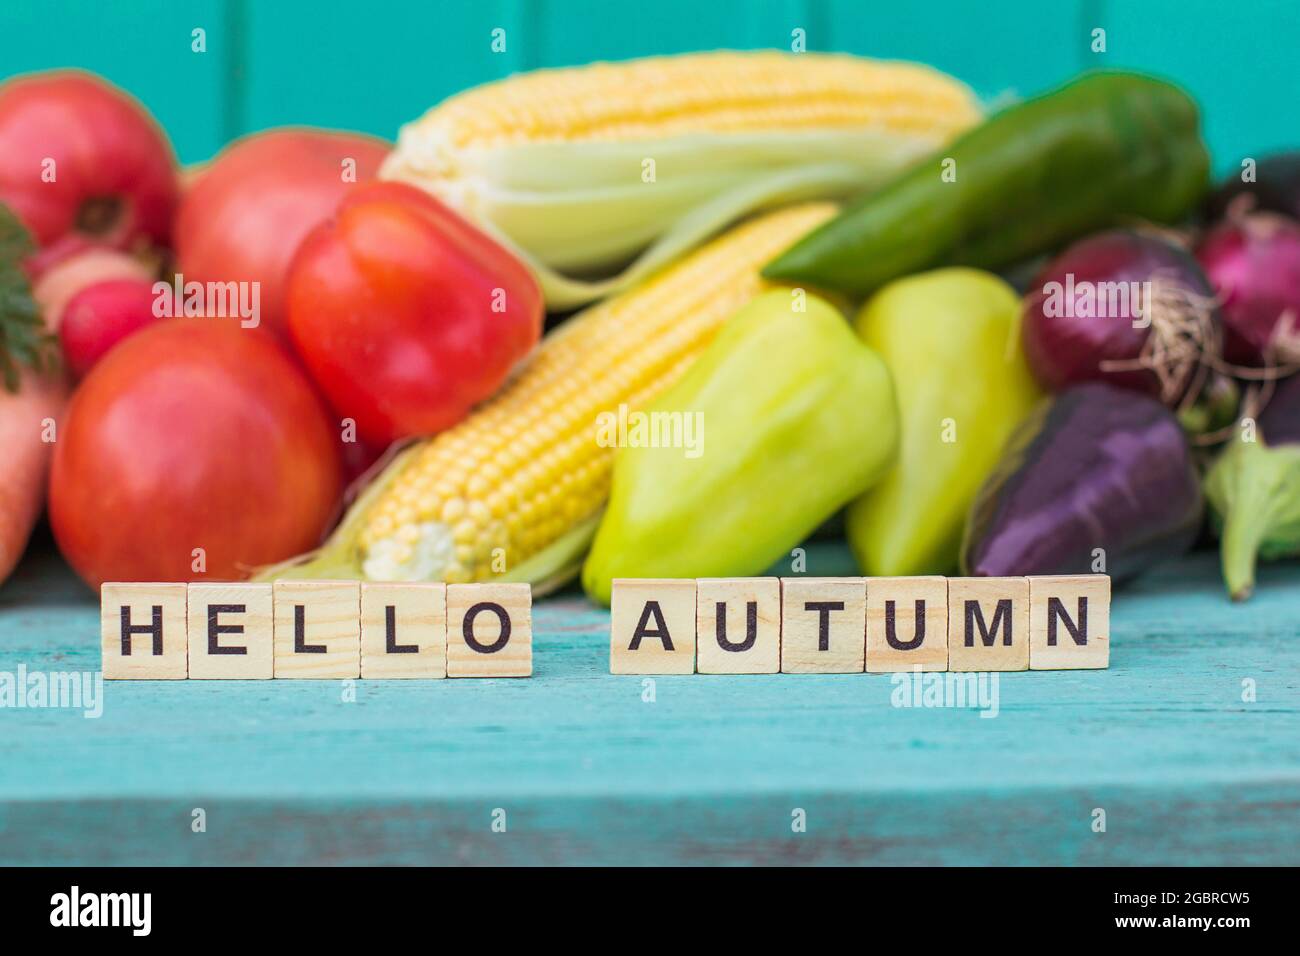 Die Inschrift Hallo Herbst auf einem hölzernen lackierten blauen Hintergrund Sortiment von frischem Bio-Gemüse, Ernte, Herbstsaison Stockfoto